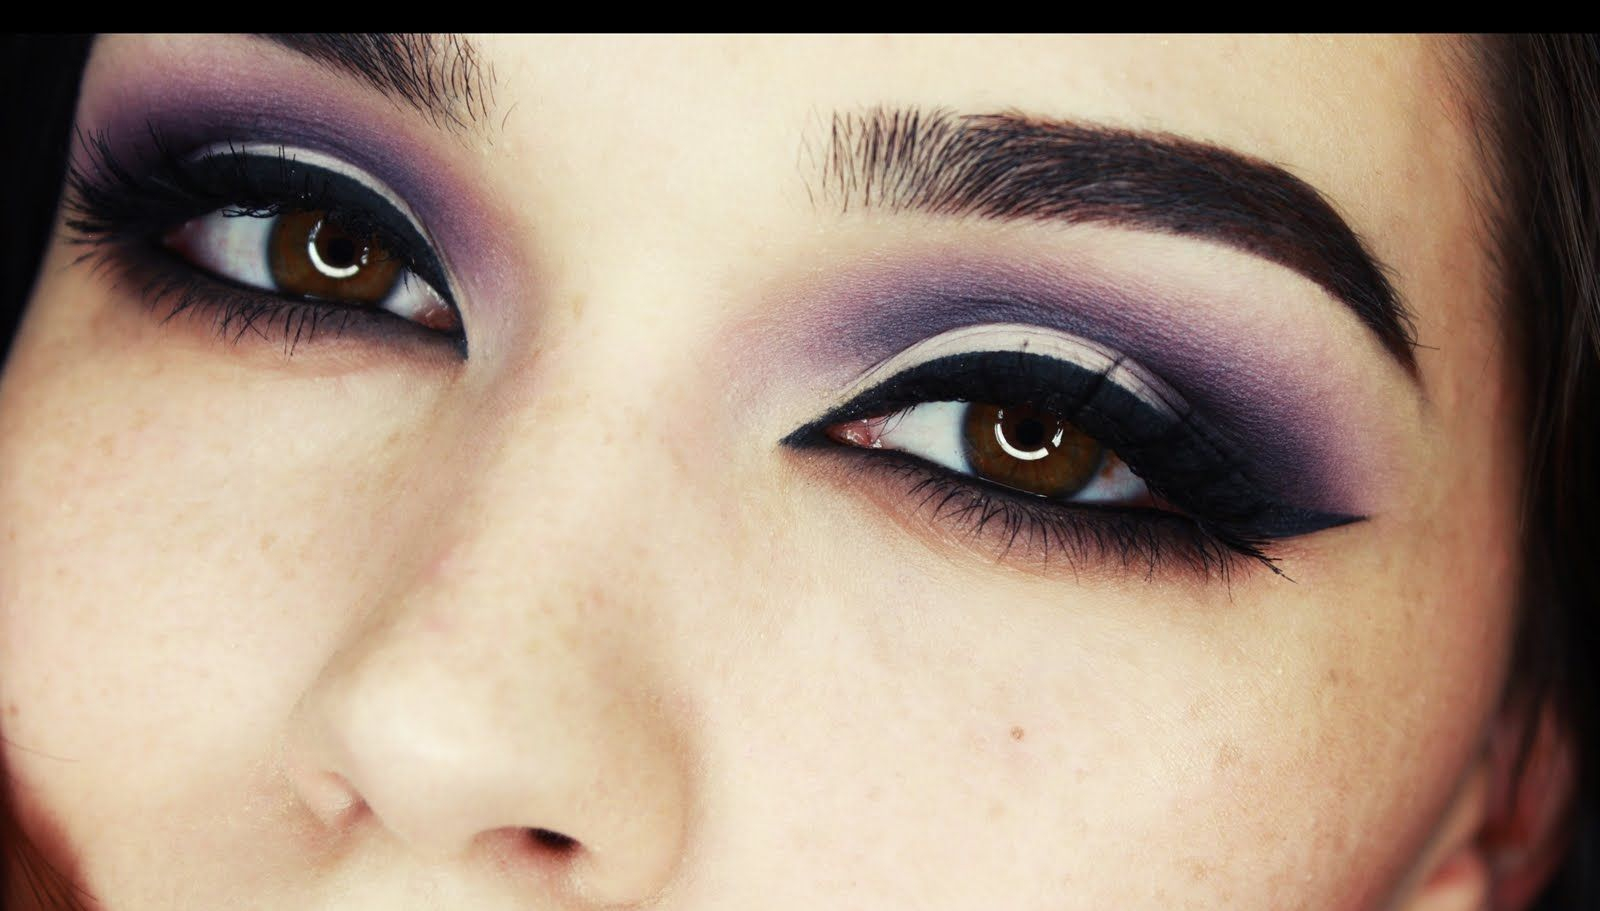 Arab Eye Makeup Arab Inspired Eye Makeup Matts Make Up Pinterest Eye Make Up